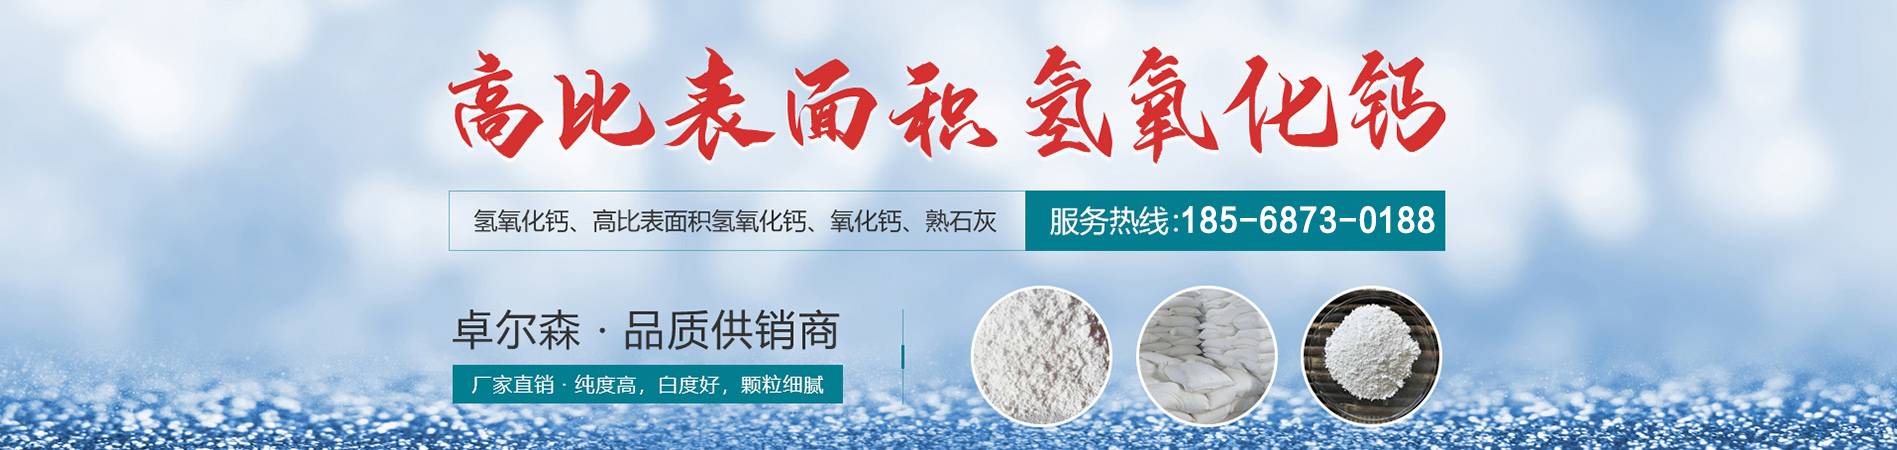 干法粉状脱硫剂厂家、荆州本地干法粉状脱硫剂厂家、荆州、荆州干法粉状脱硫剂厂家